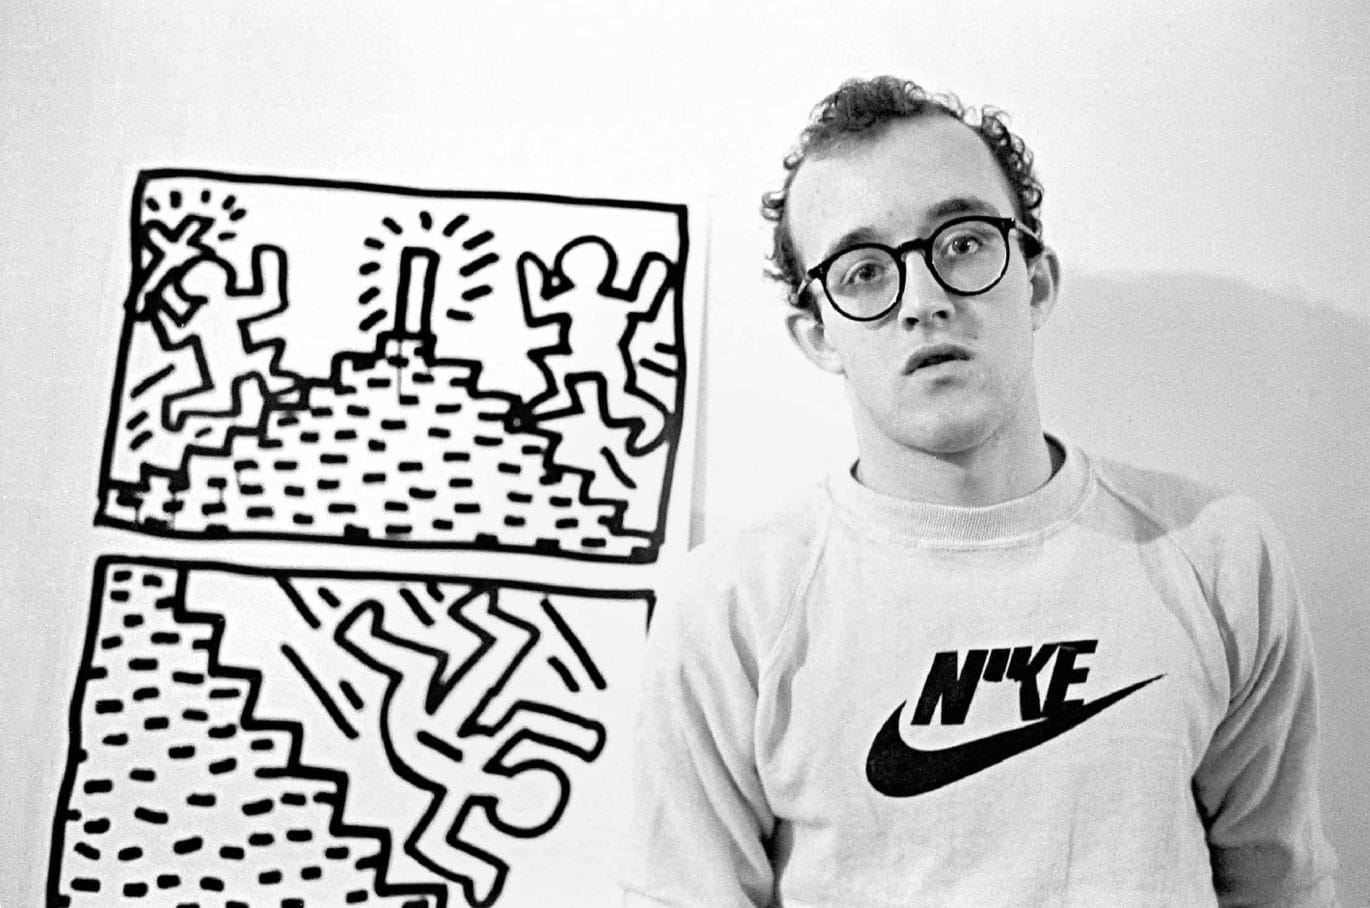 Keith Haring BOZAR